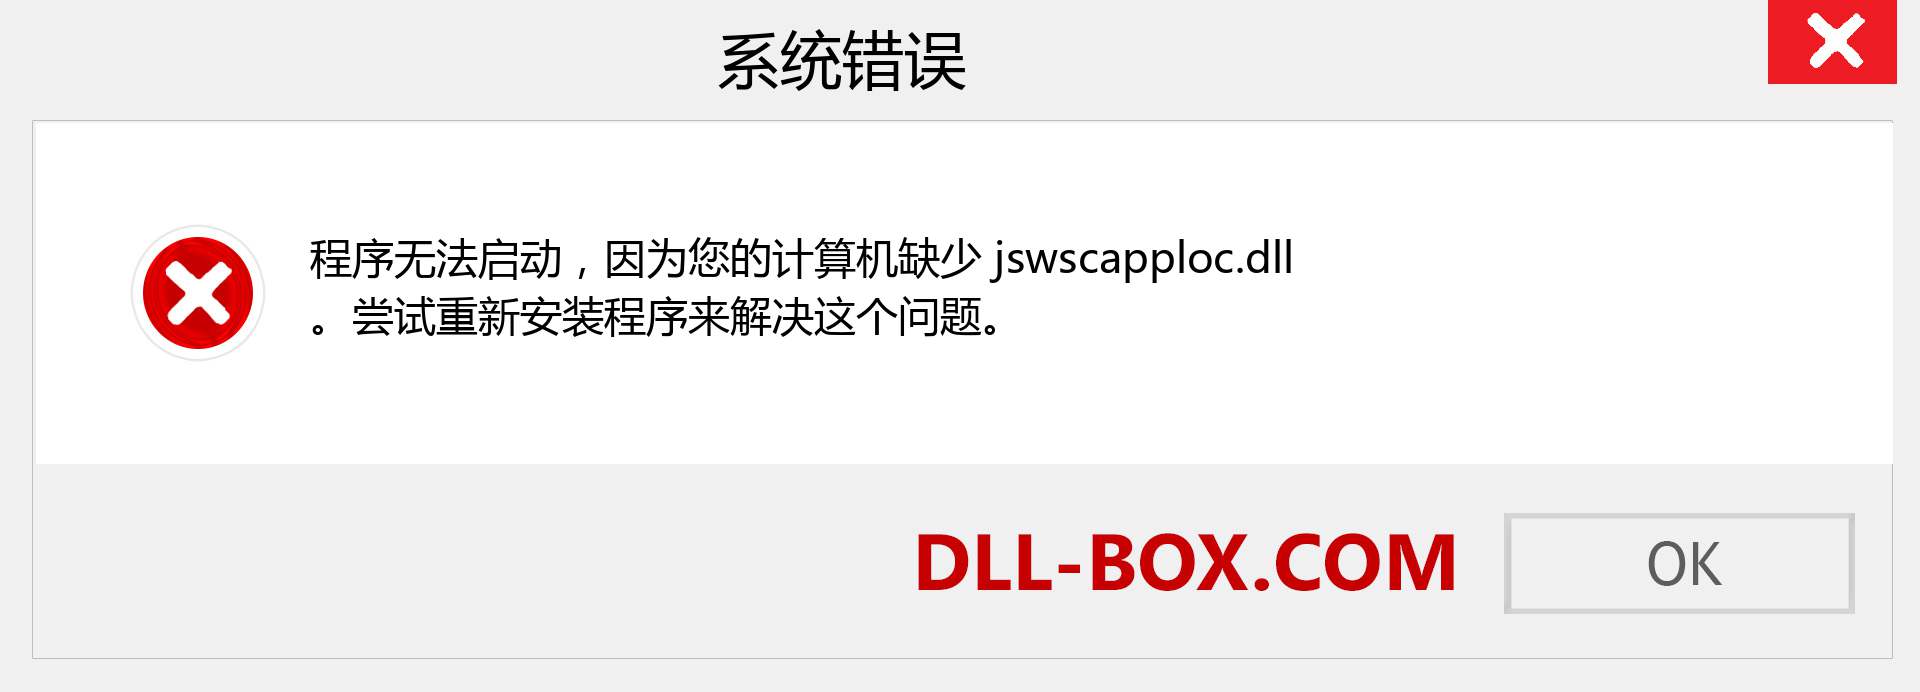 jswscapploc.dll 文件丢失？。 适用于 Windows 7、8、10 的下载 - 修复 Windows、照片、图像上的 jswscapploc dll 丢失错误